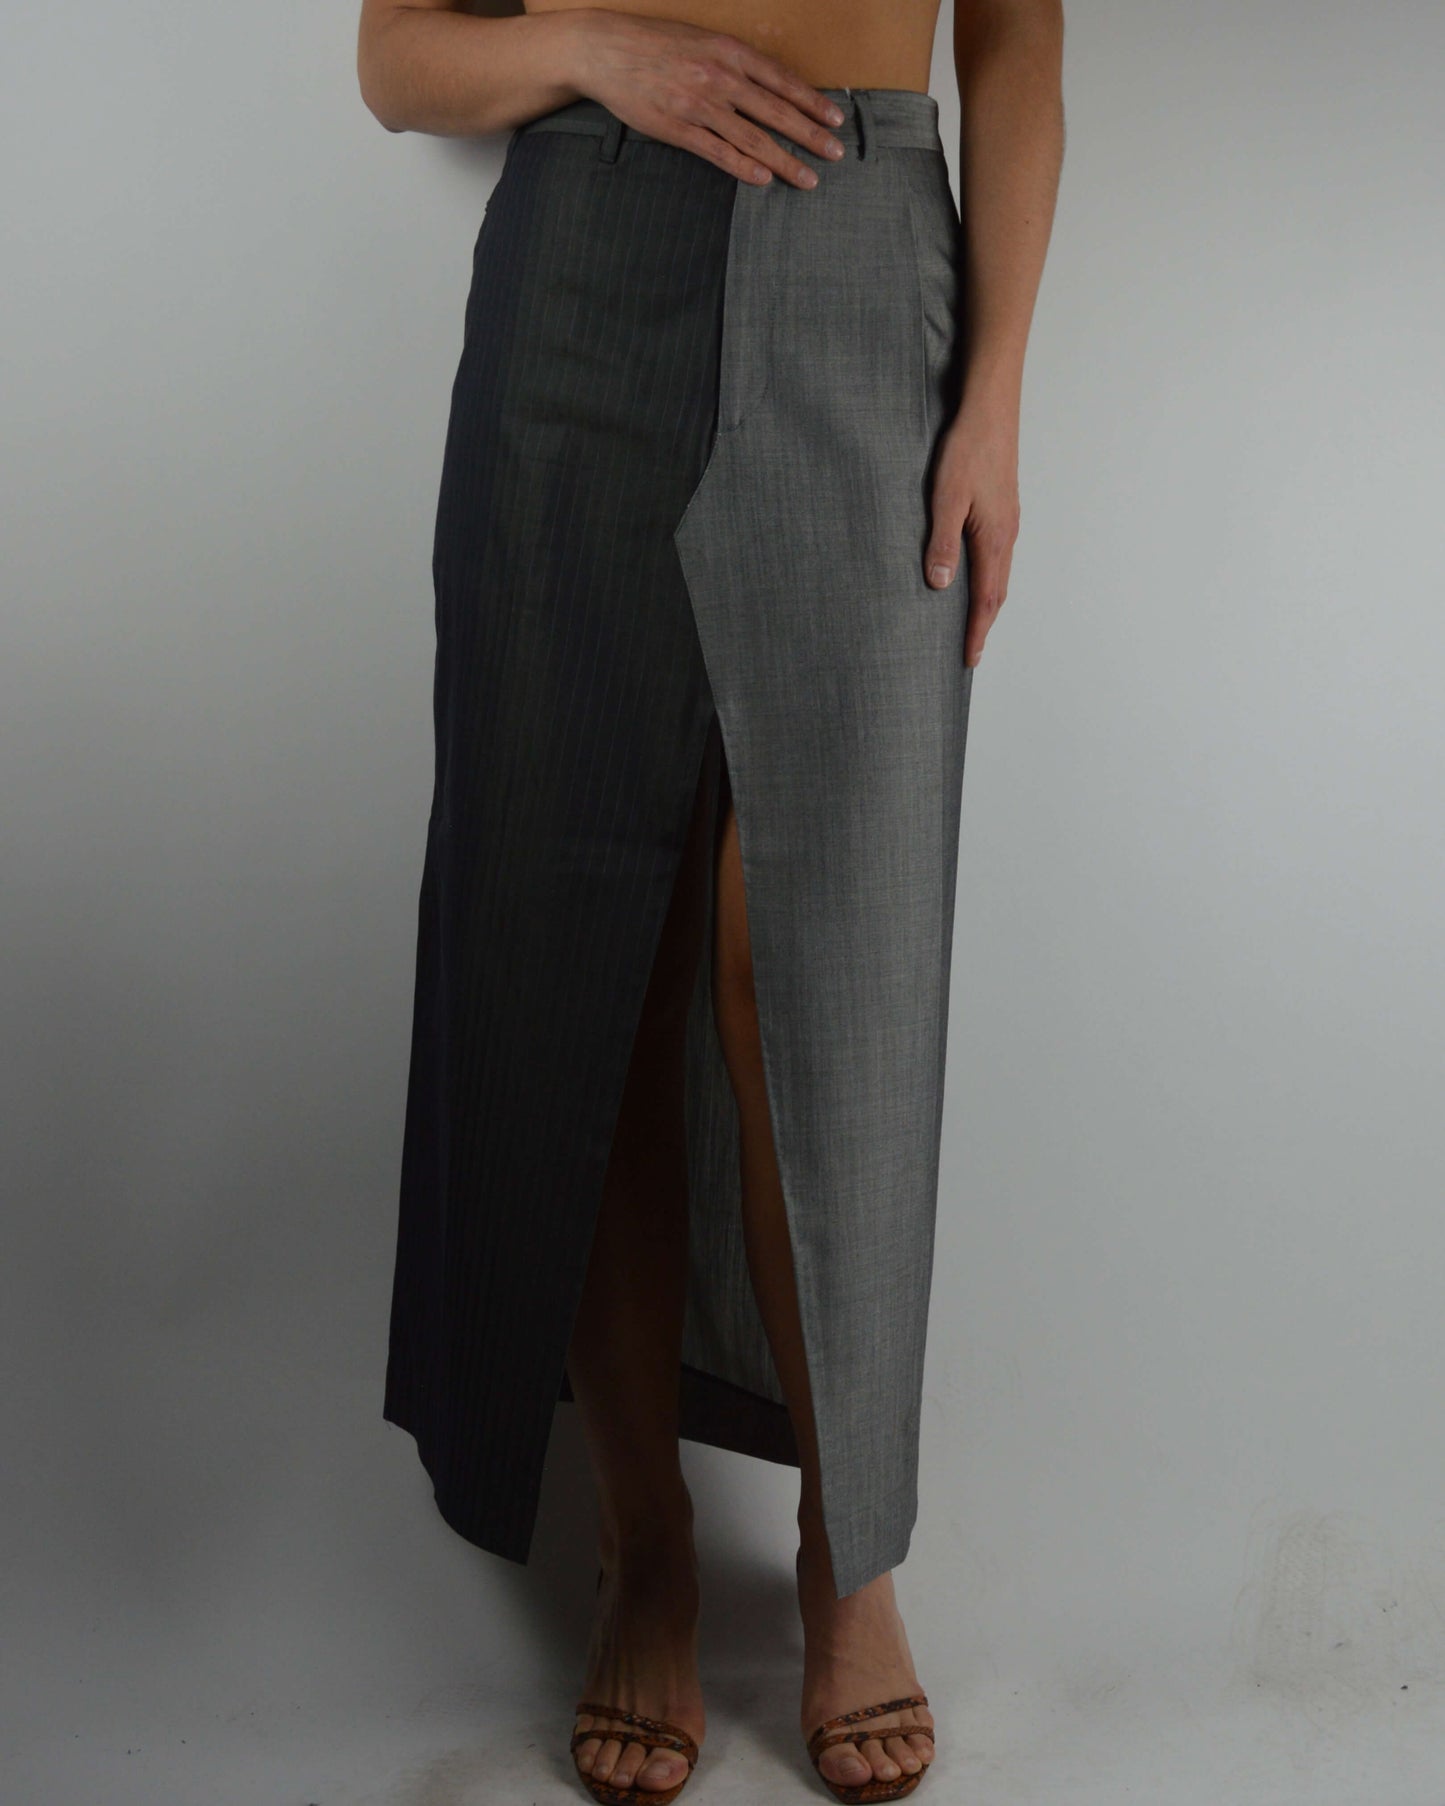 DUO Long Skirt - Perfect Light Match (S/M)